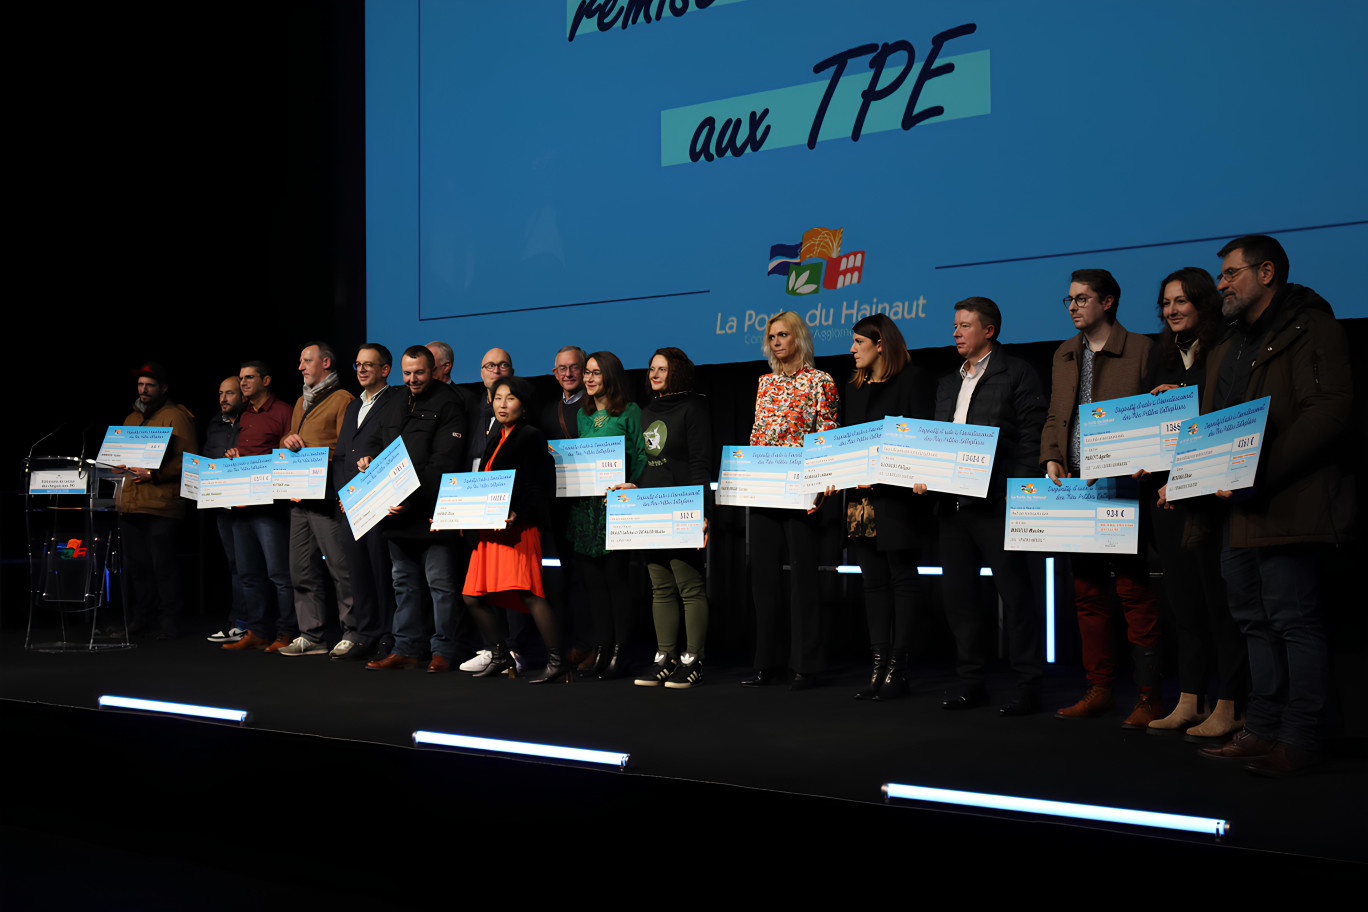 Les 16 représentants des TPE soutenues par la Porte du Hainaut. © Aletheia Press/E.Chombart